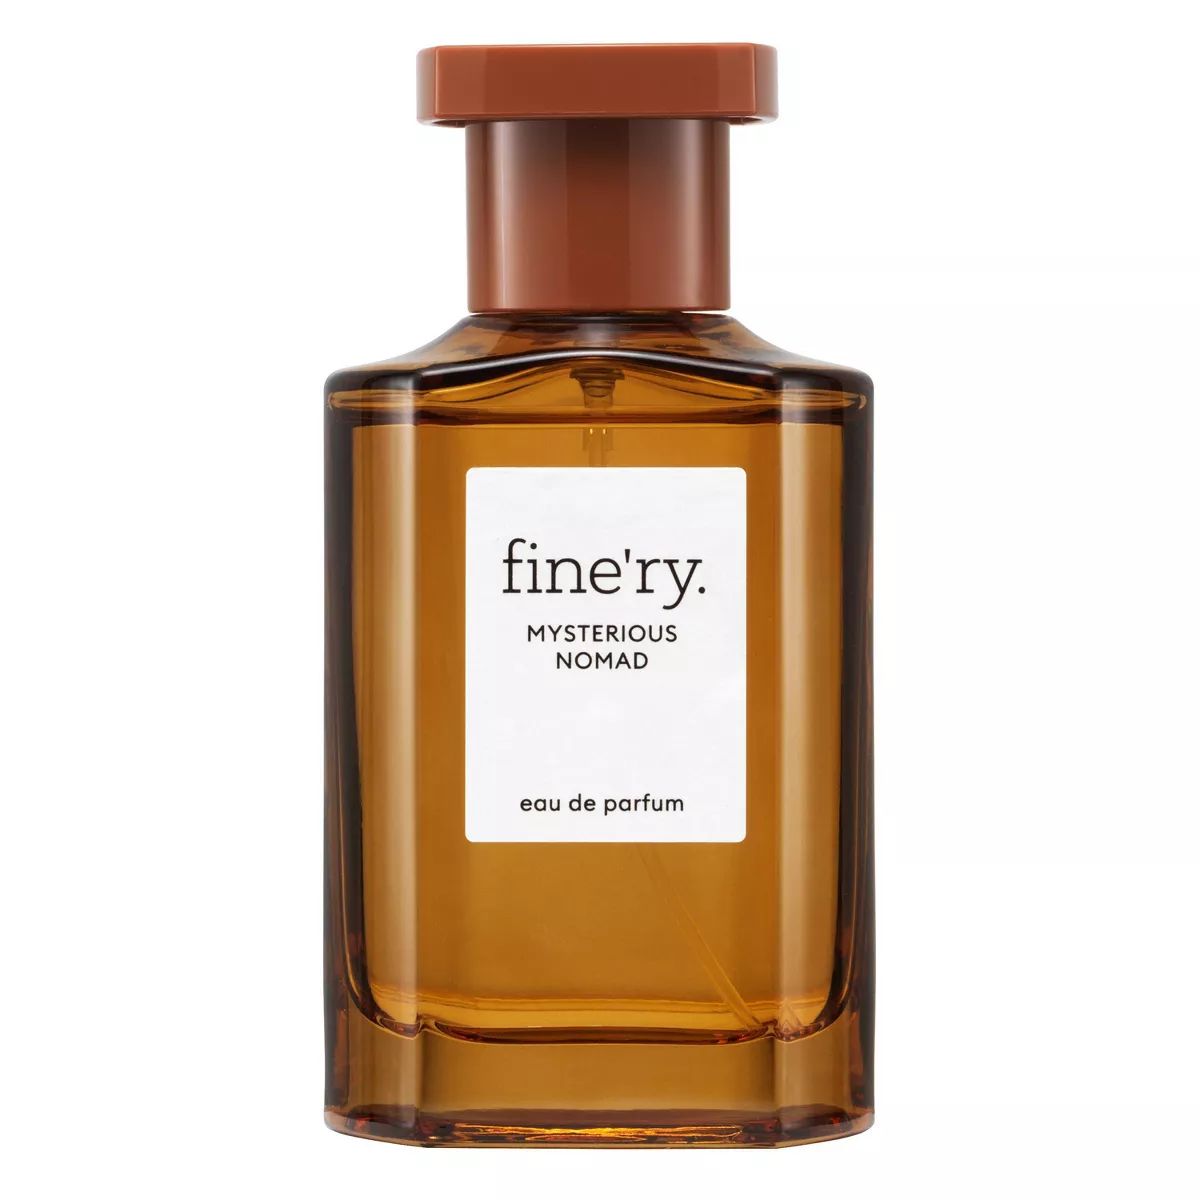 fine'ry. Women's Eau de Parfum Perfume - Mysterious Nomad - 2 fl oz | Target